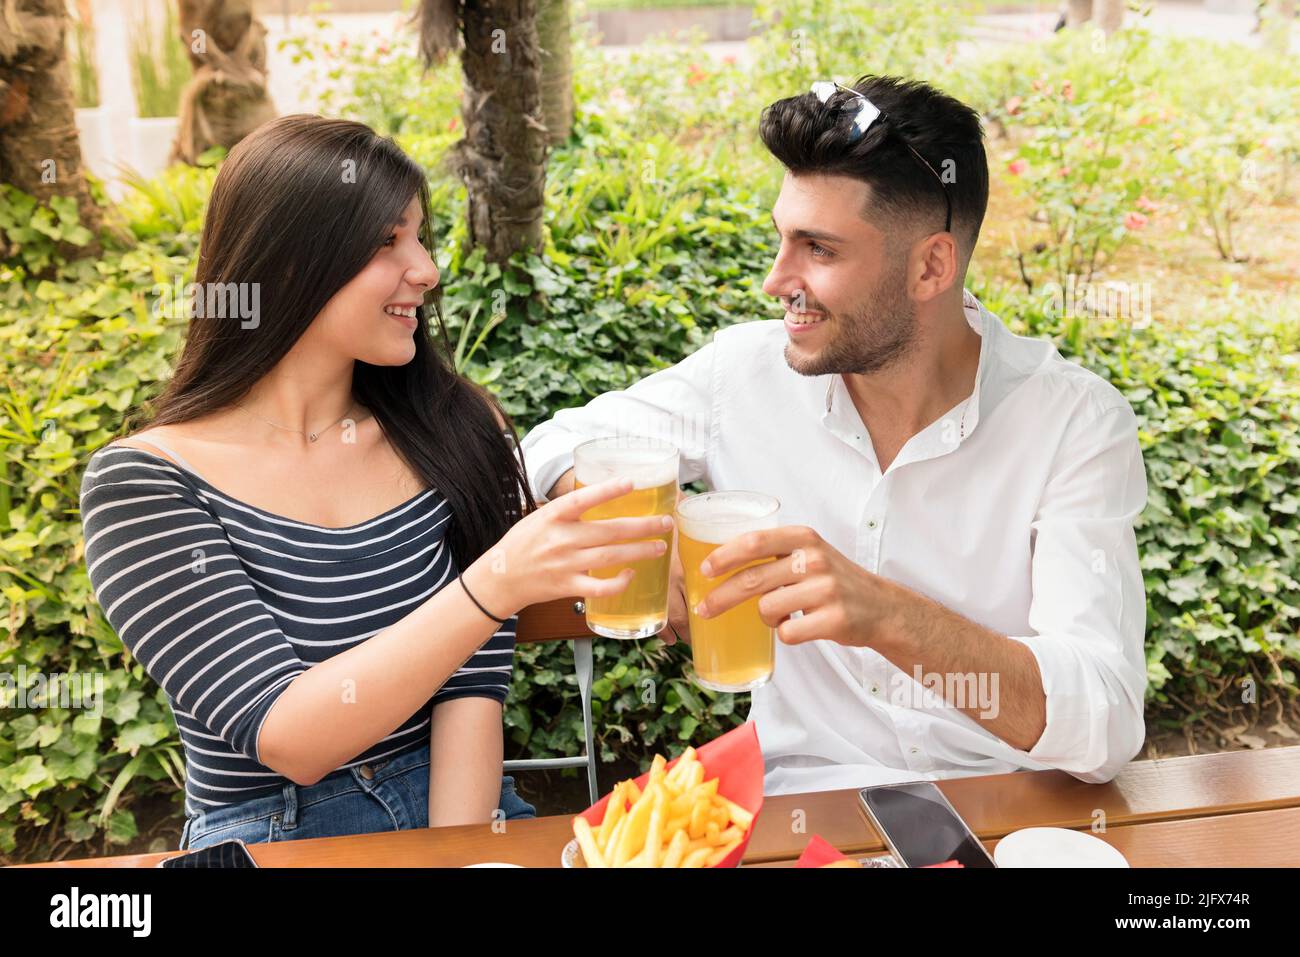 Pareja joven romántica que se topan con cerveza fría al aire libre en un parque o jardín sonriendo y feliz mientras celebran su amor Foto de stock